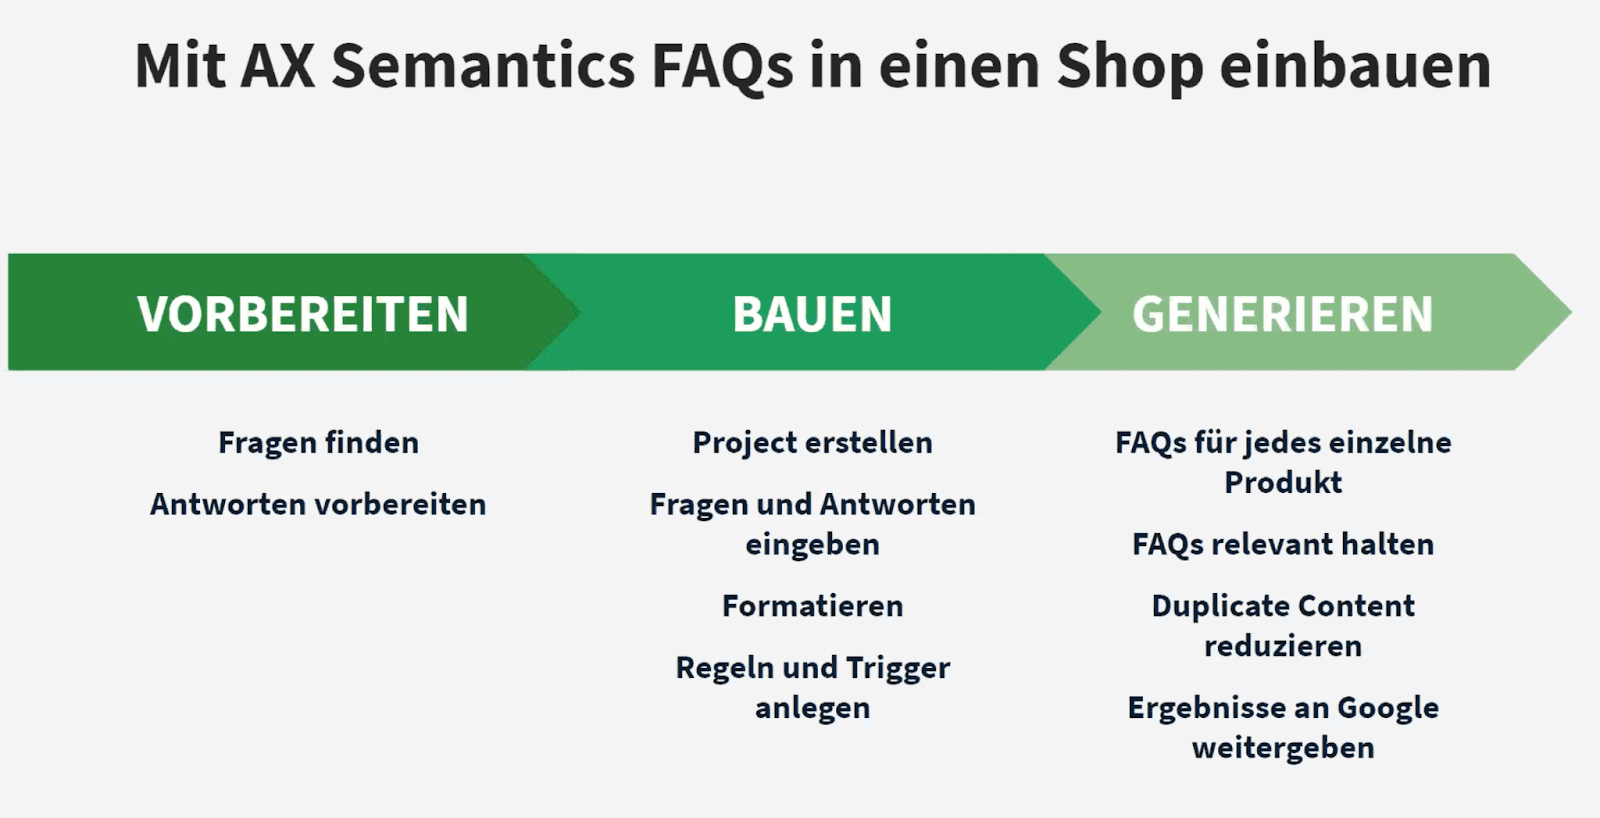 Mit AX Semantics FAQs Shop bauen